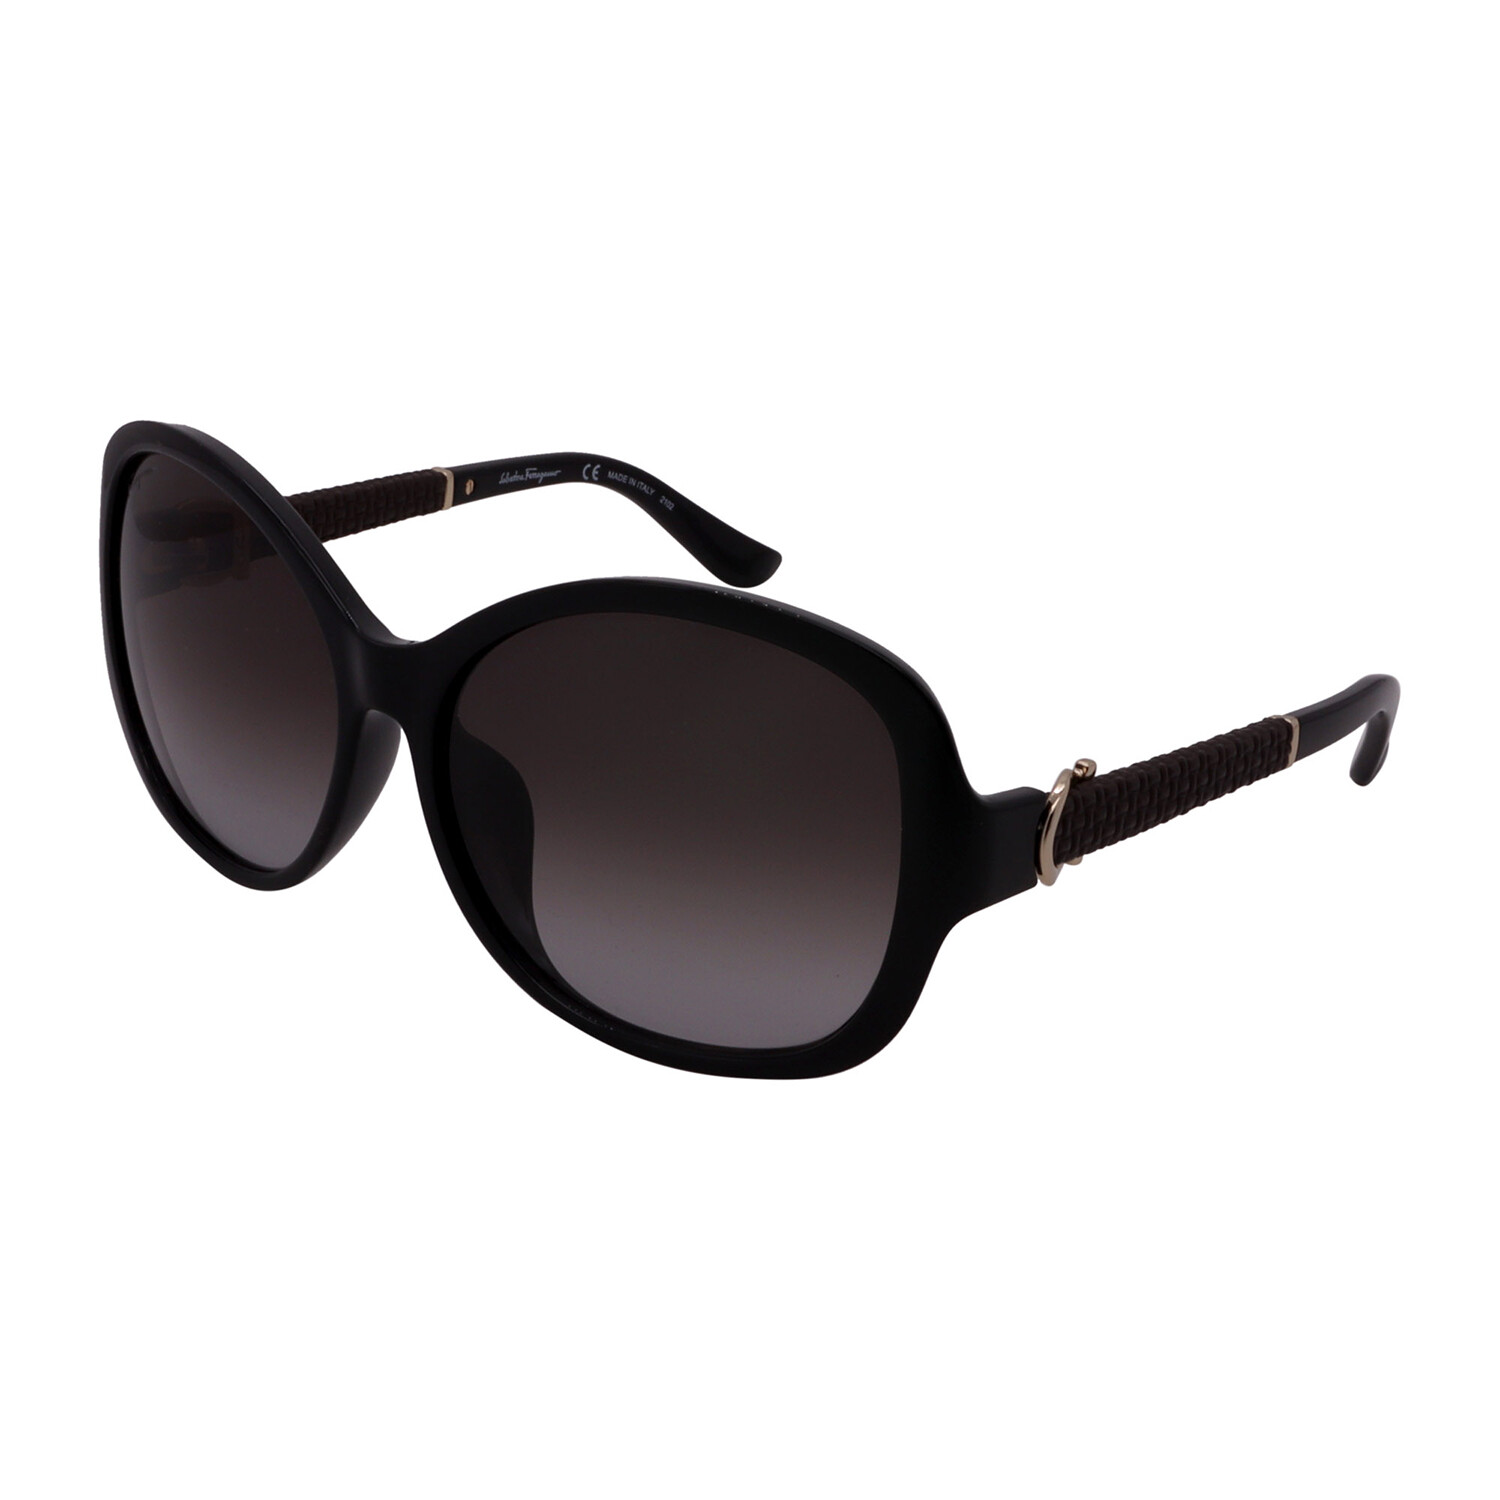 Womens Sf744sla 001 Square Sunglasses Black Gray Gradient Salvatore Ferragamo Touch Of 